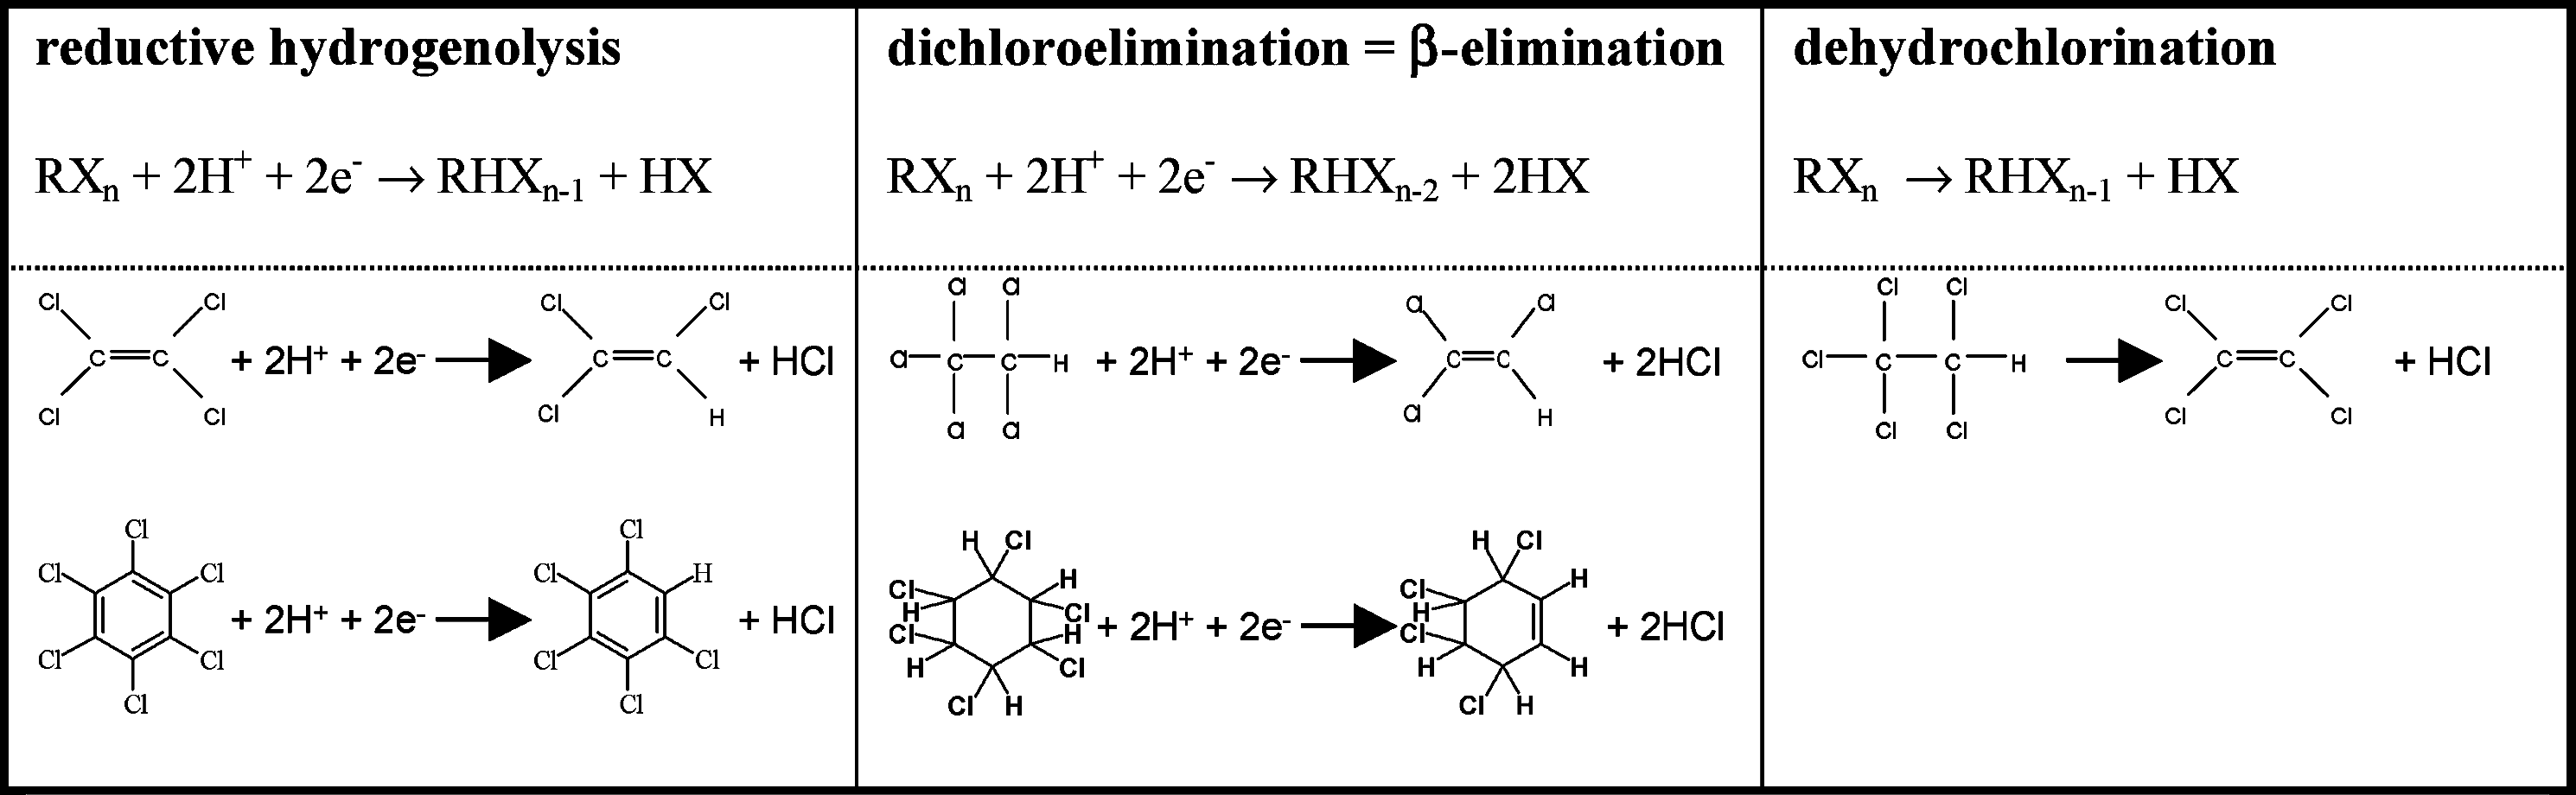 Figure 3 - Exemples de réduction (déchlorination) de certains composés organiques sous conditions anaérobies (van Eekert et Schraa, 2001).